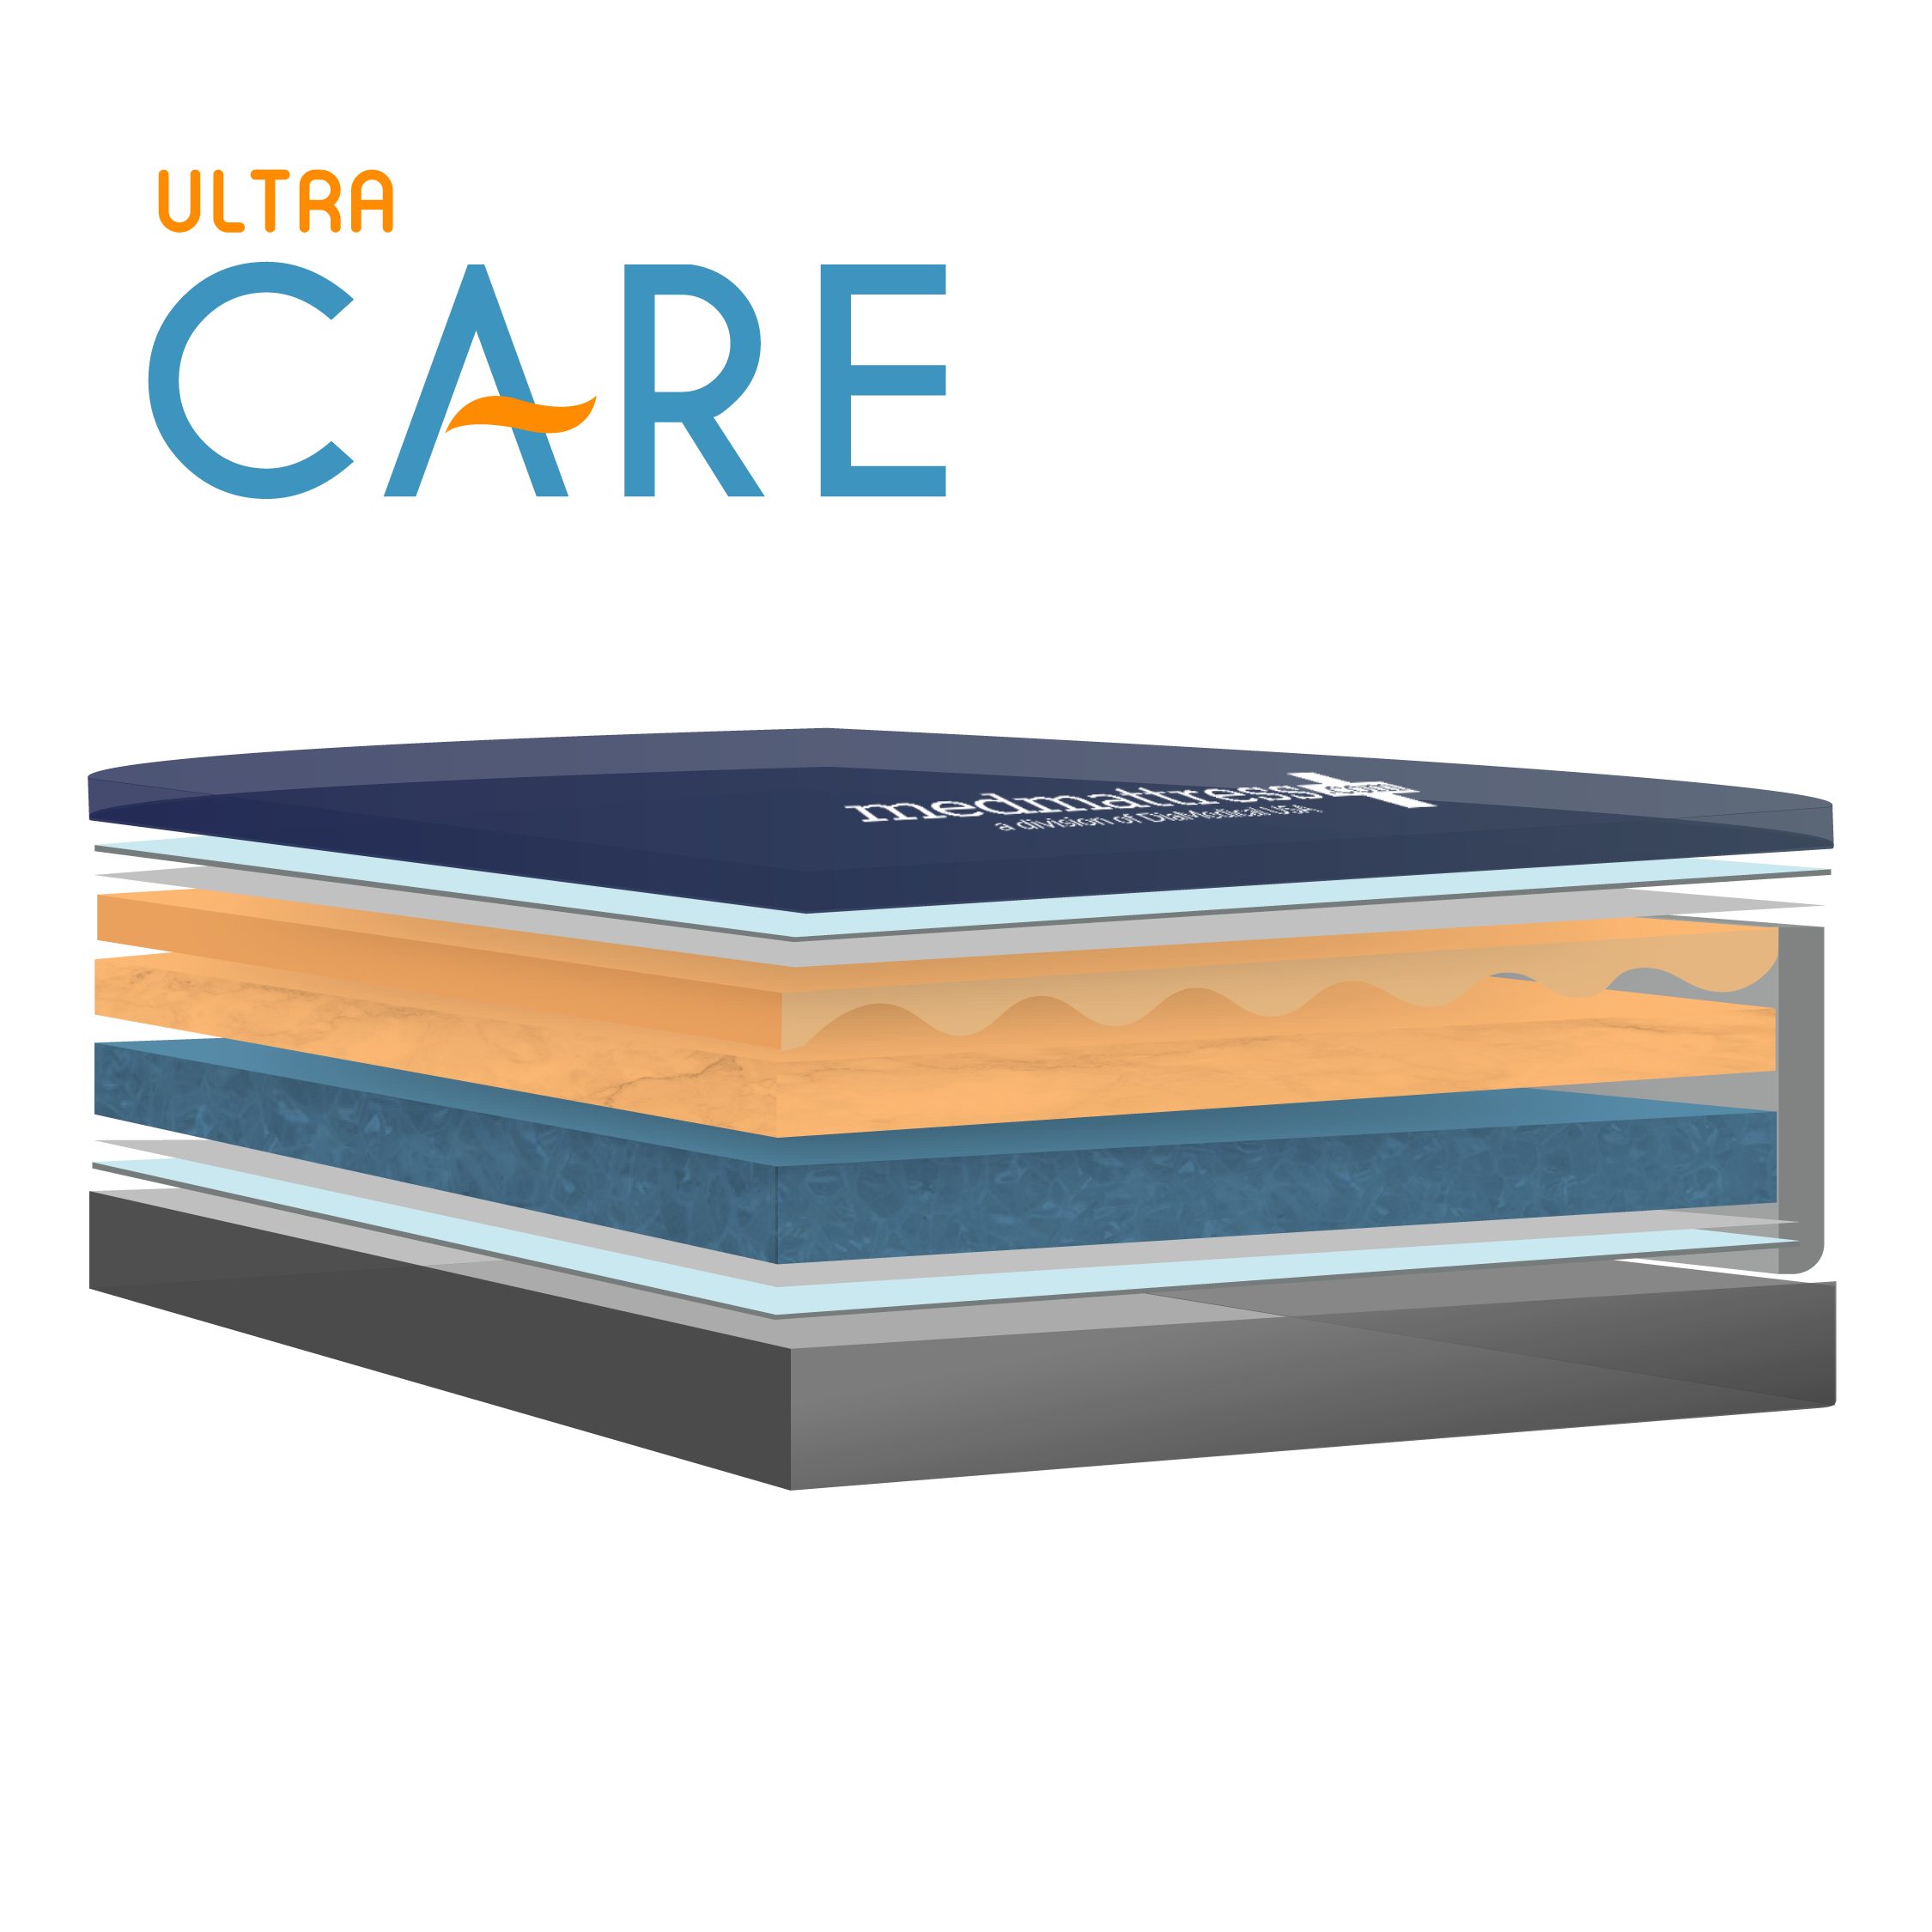 MedMattress Ultra Care Hospital Bed Mattress